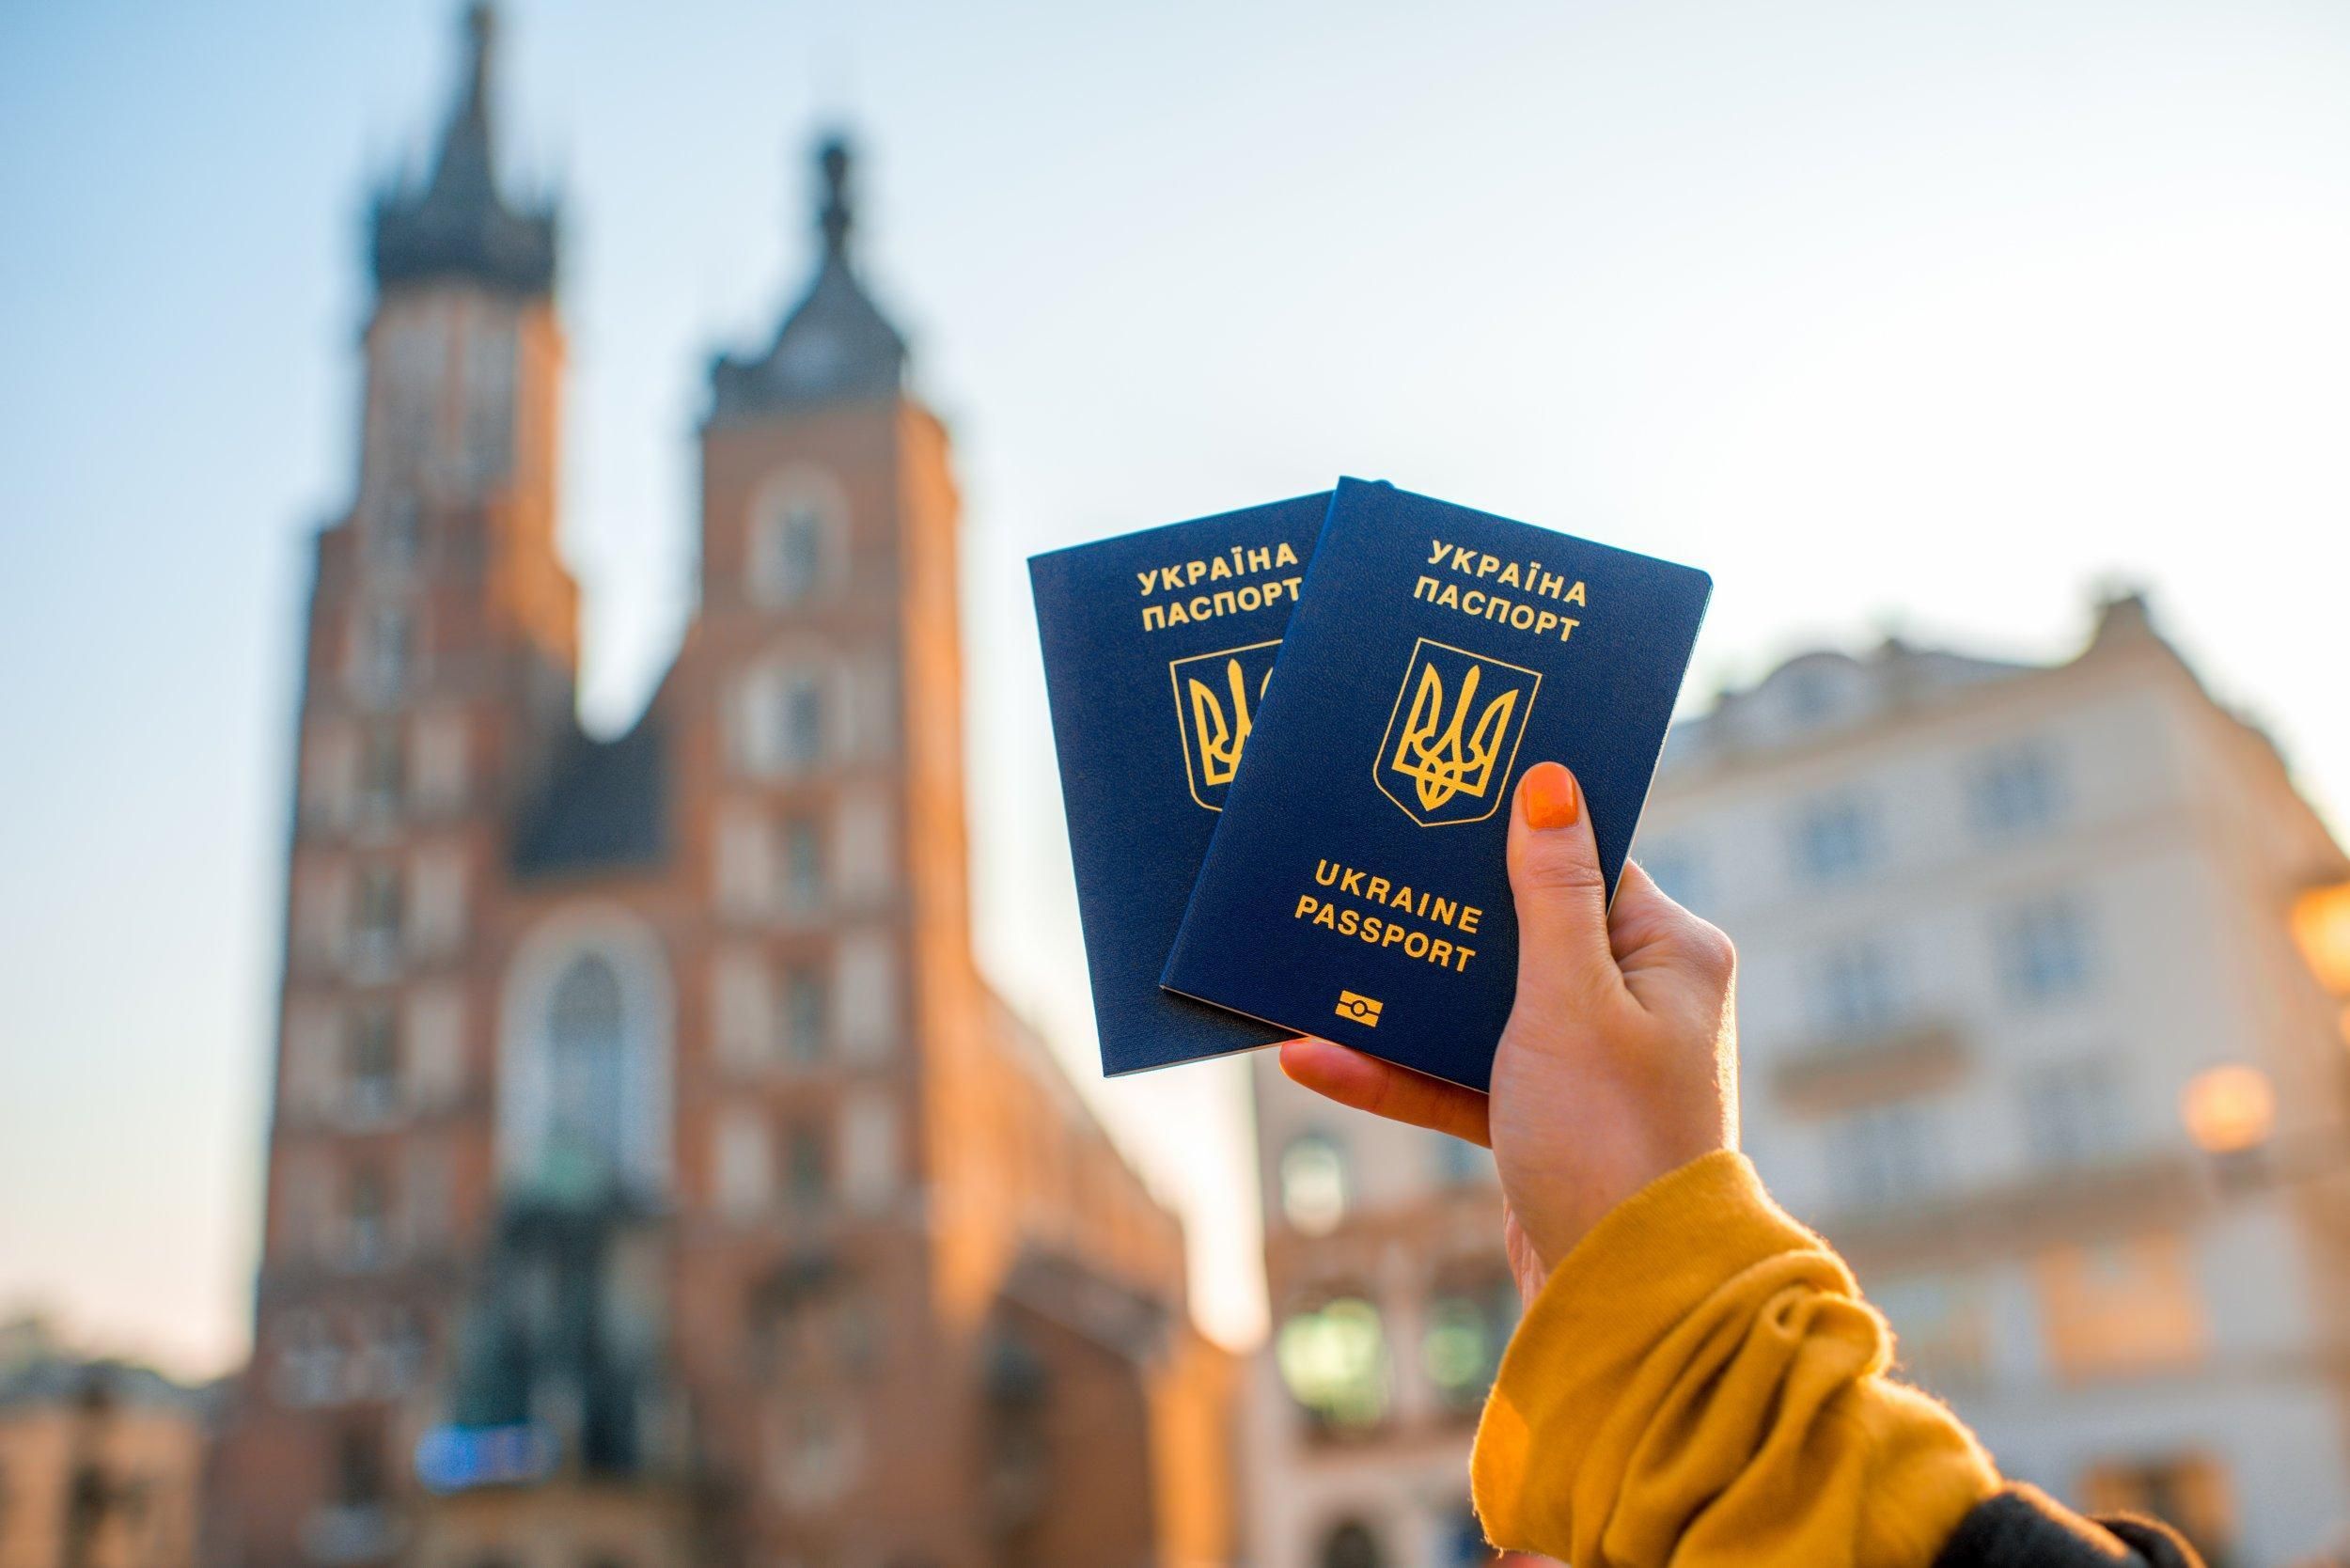 Сколько польских виз получили украинцы в 2018 году: официальная цифра